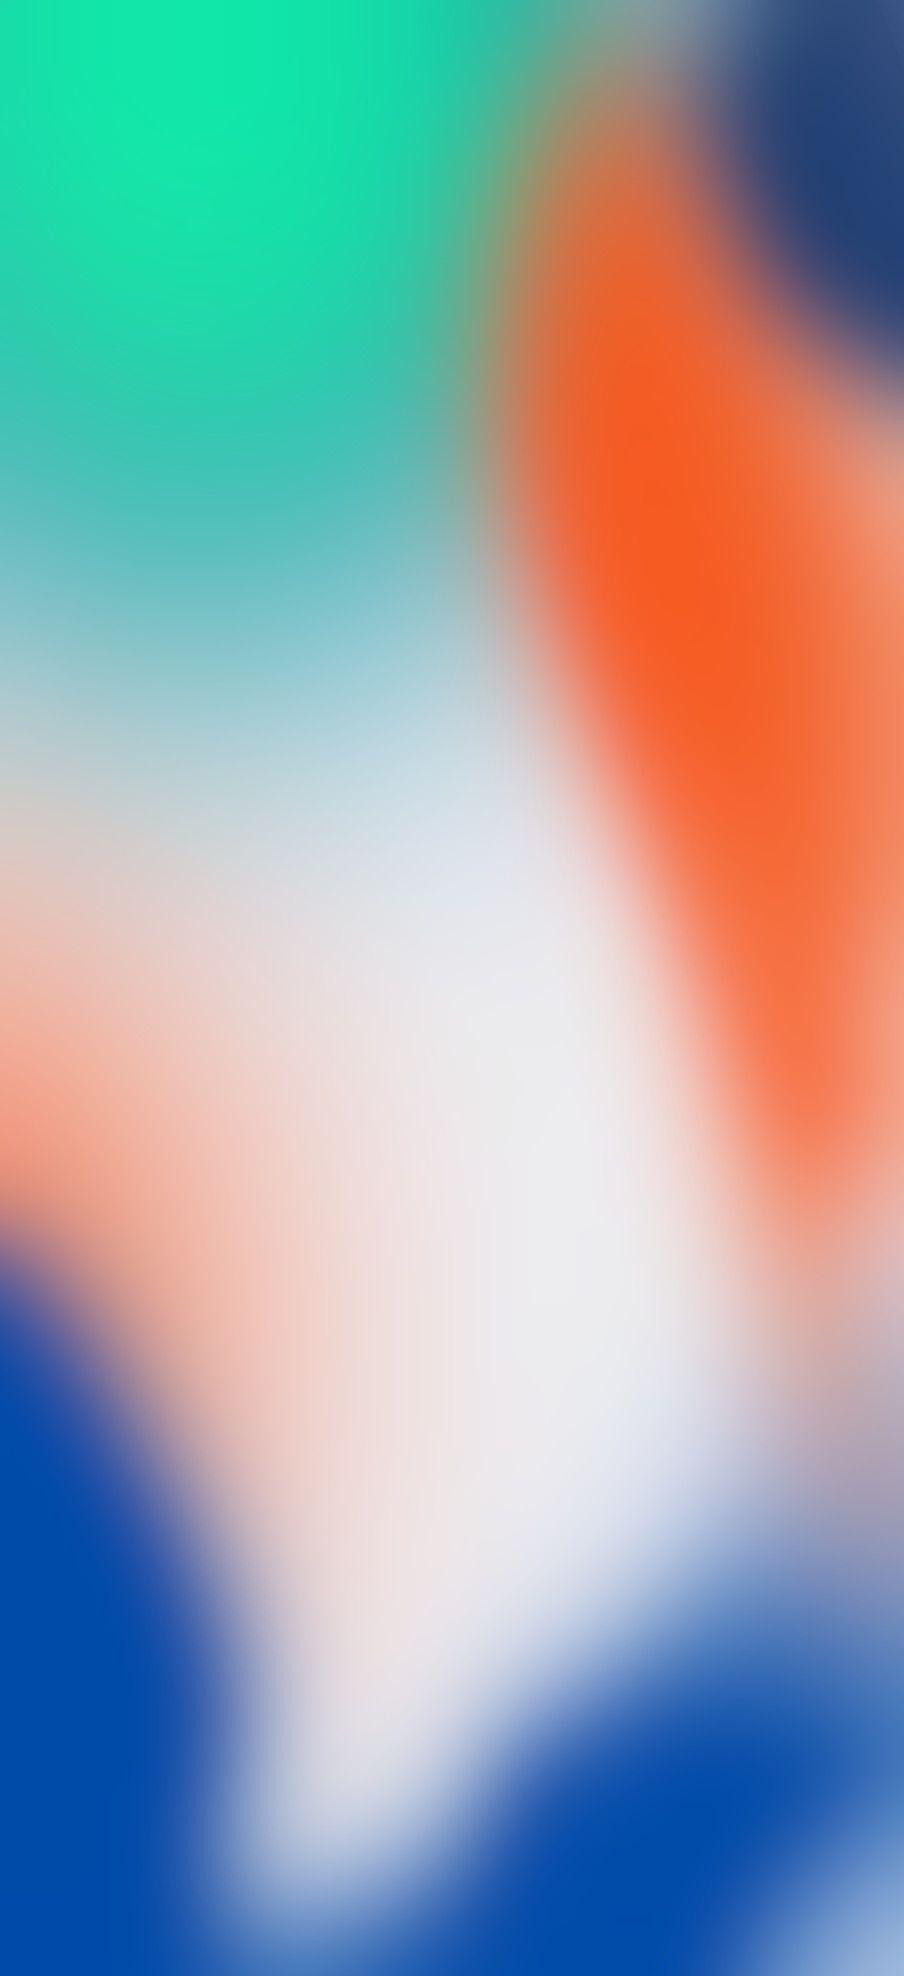 904x1976 iOS 11, iPhone X, cam, xanh lá cây, xanh lam, Cổ phiếu, trừu tượng, táo